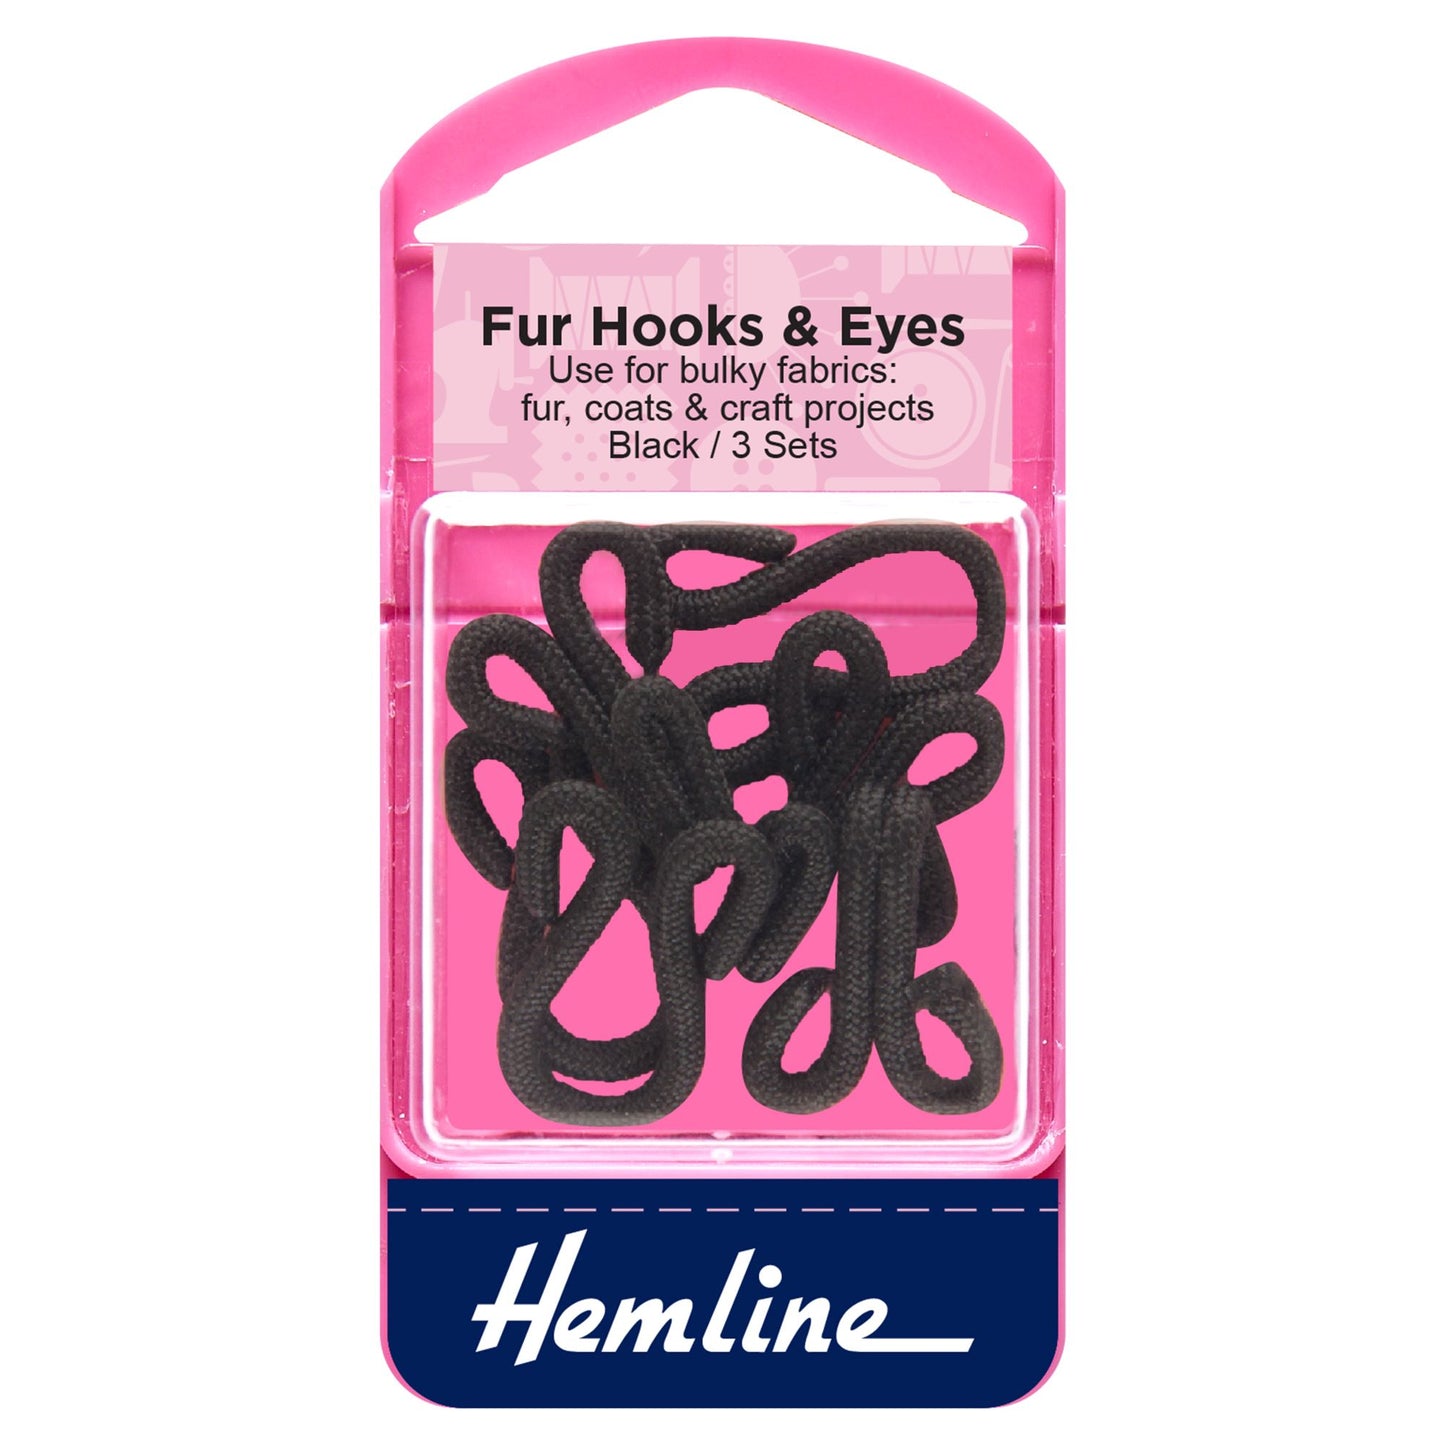 Fur Hook & Eyes